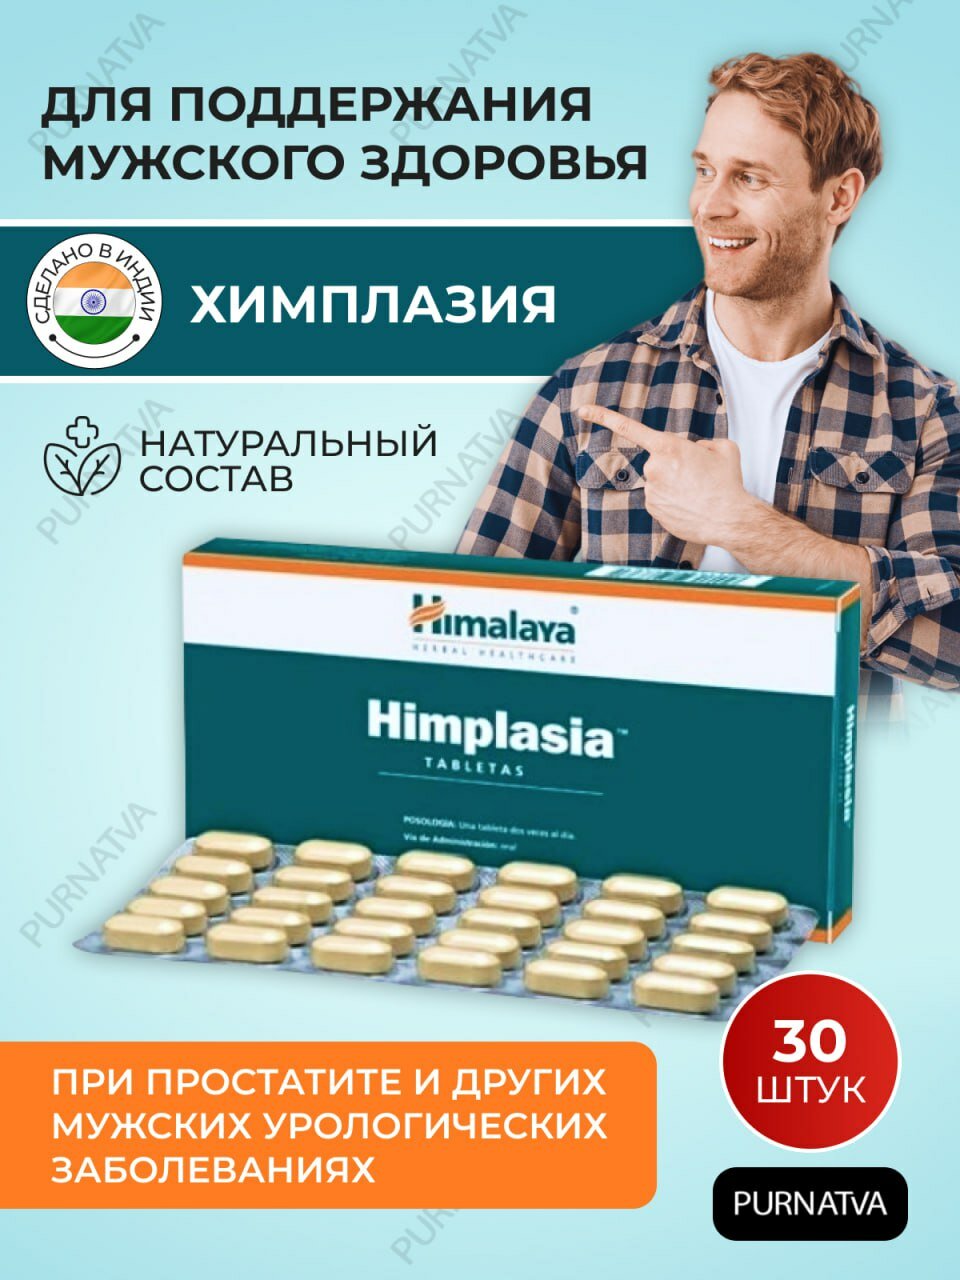 Таблетки Химплазия Хималая (Himplasia Himalaya), при простатите, при мужских урологических инфекциях, 30 таб.